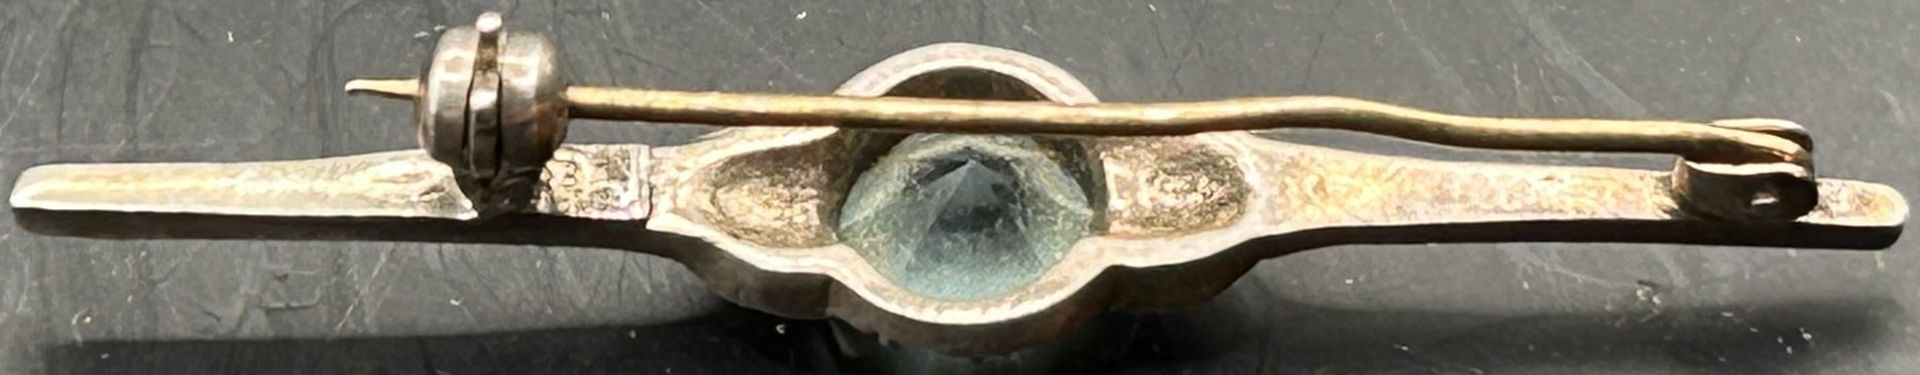 Silber-Nadel mit blauen Stein, L-5 cm, Tragespuren - Bild 3 aus 3